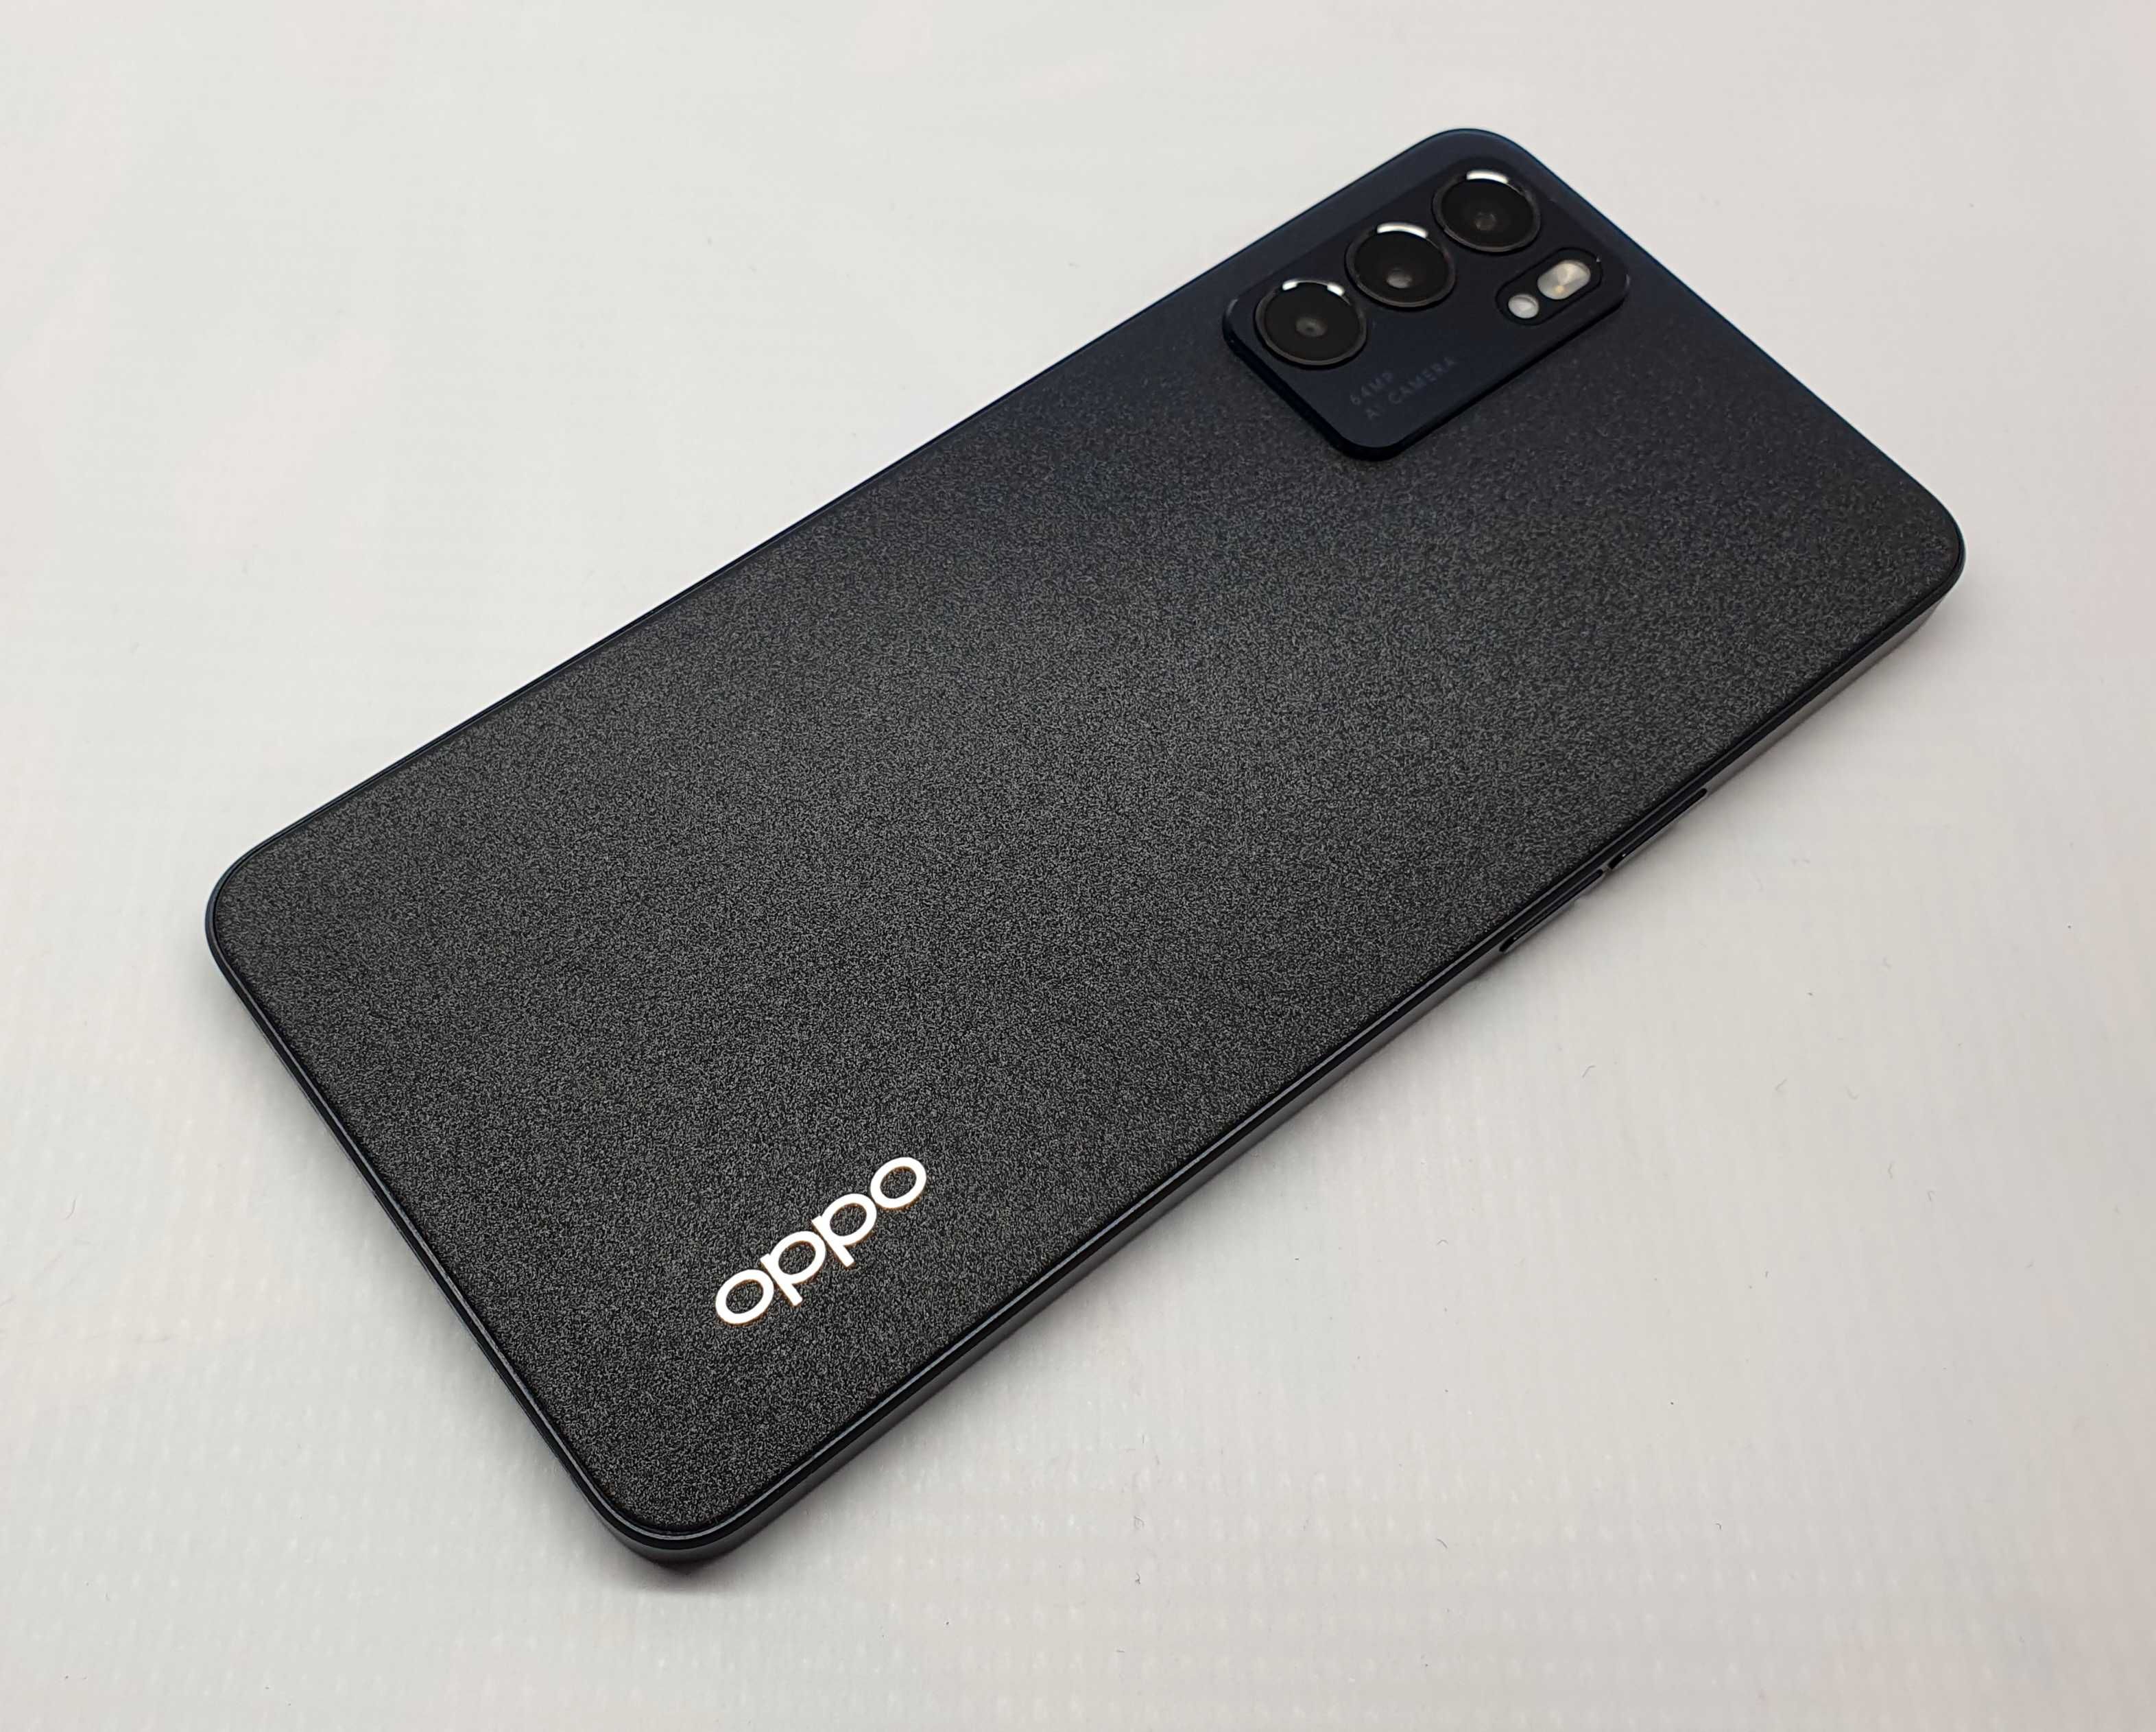 Smartfon OPPO RENO 6 5G (8/128 GB), Gwarancja, Lombard Jasło Czackiego